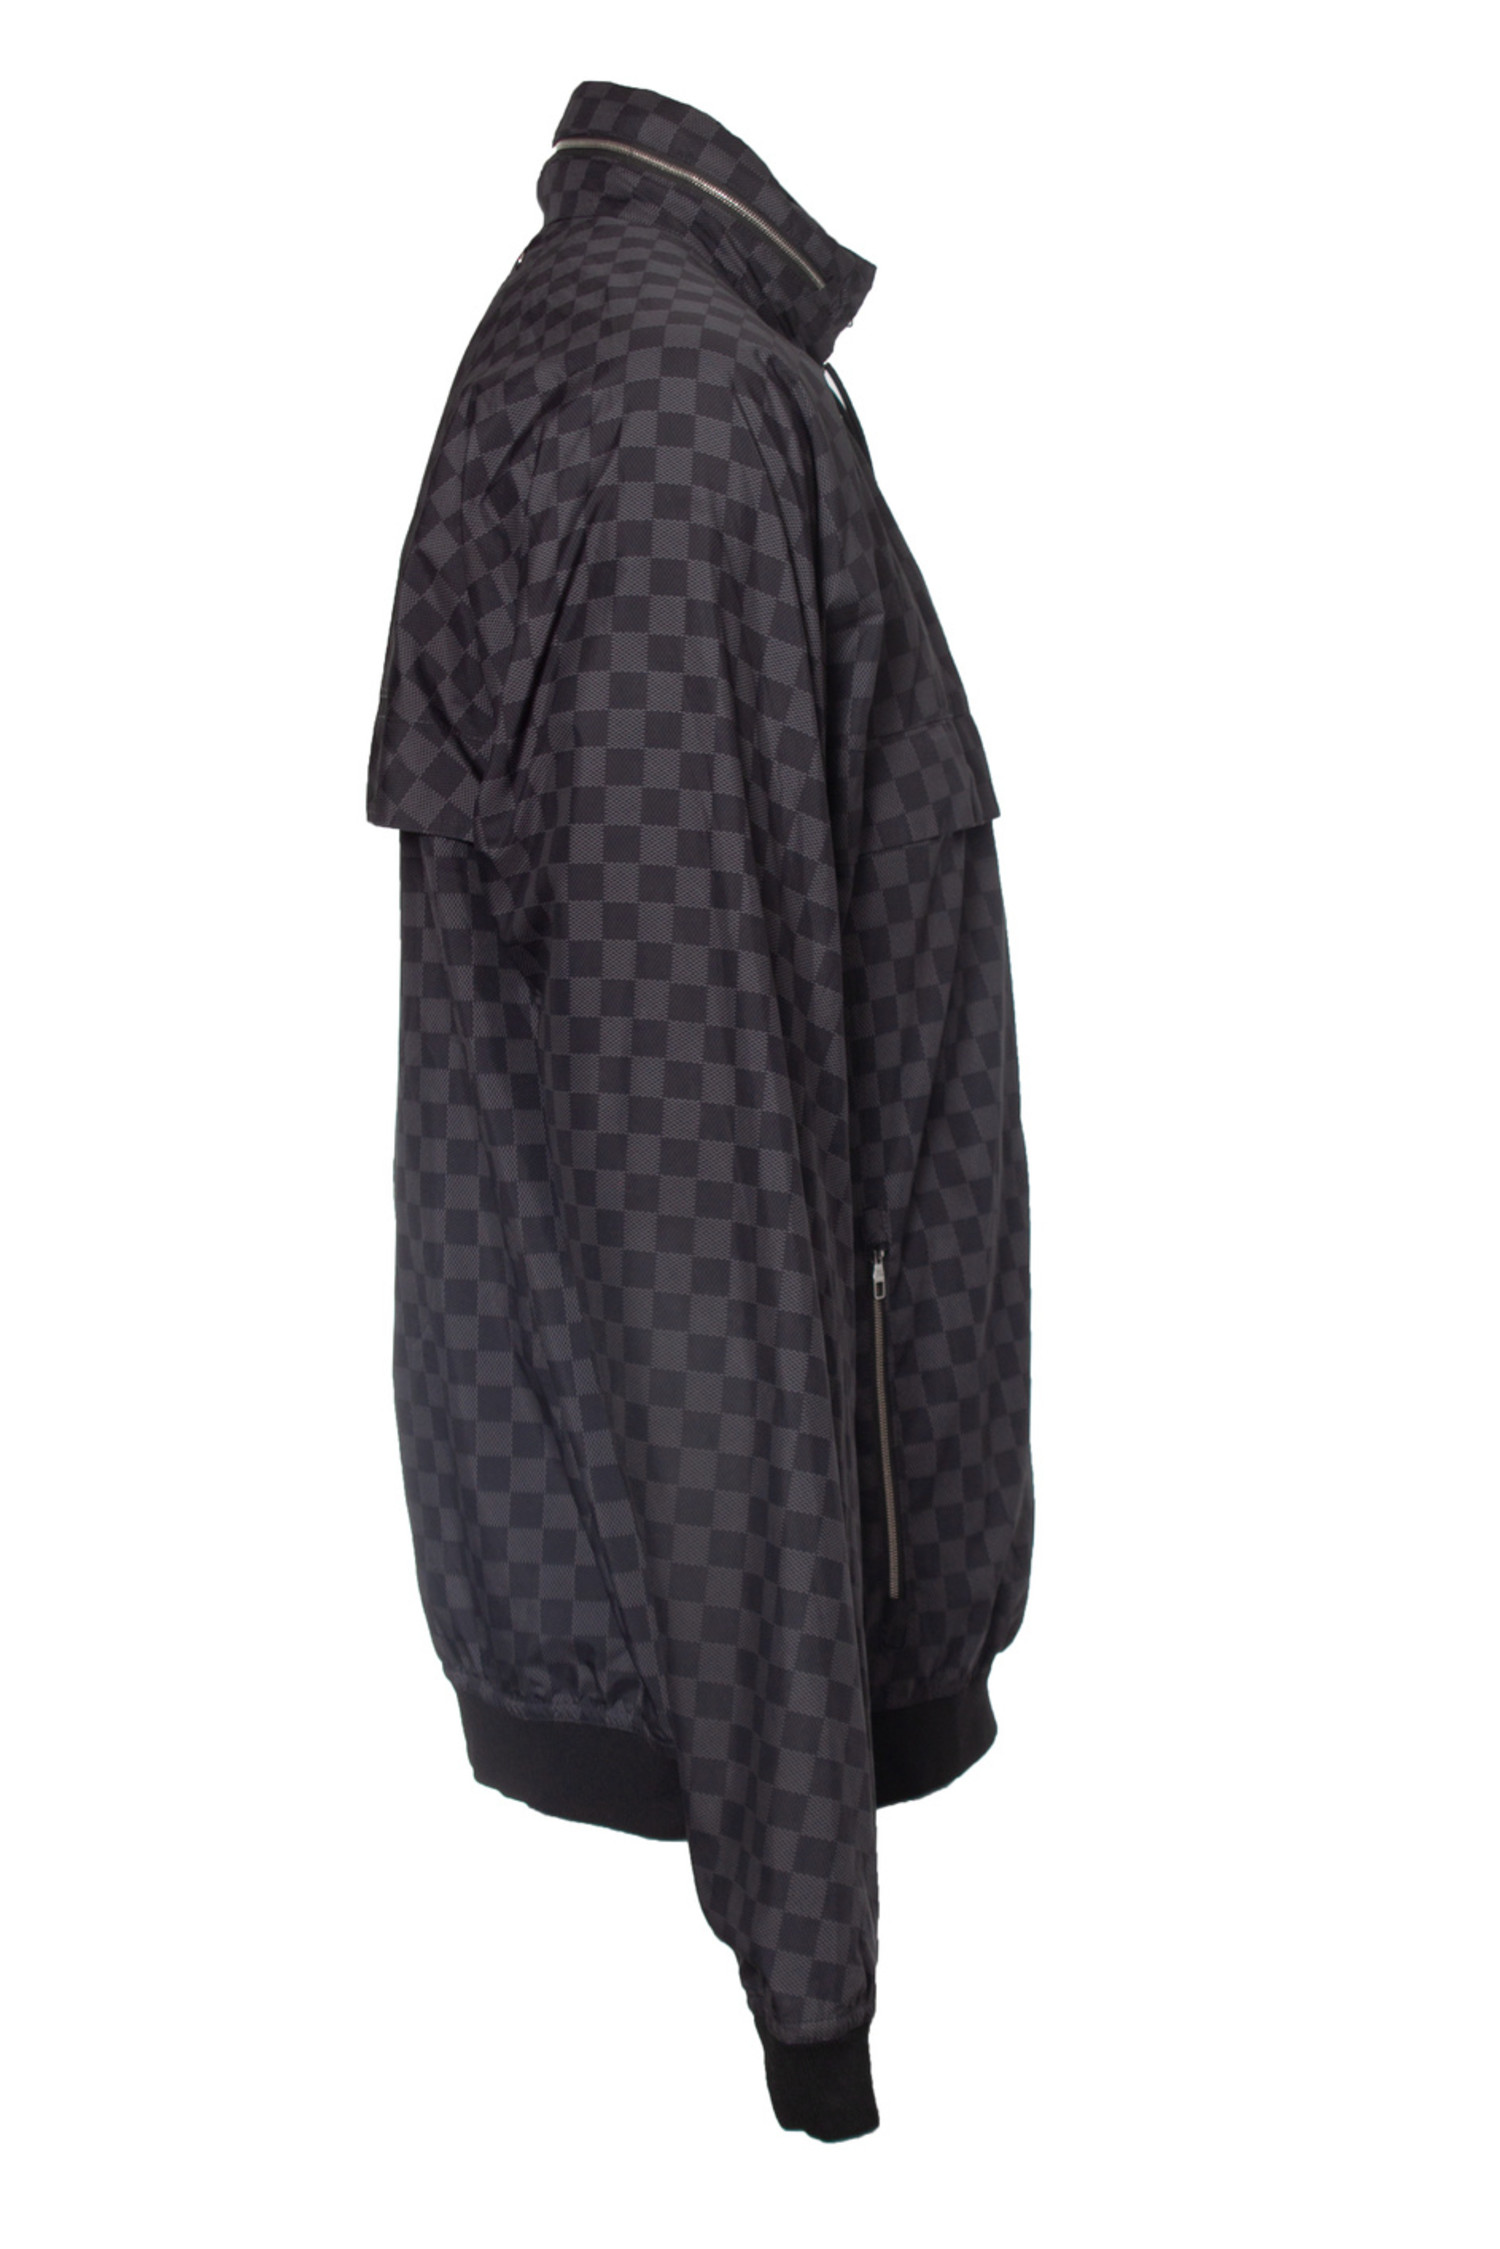 Louis Vuitton, damier graphite windbreaker jacket - Unique